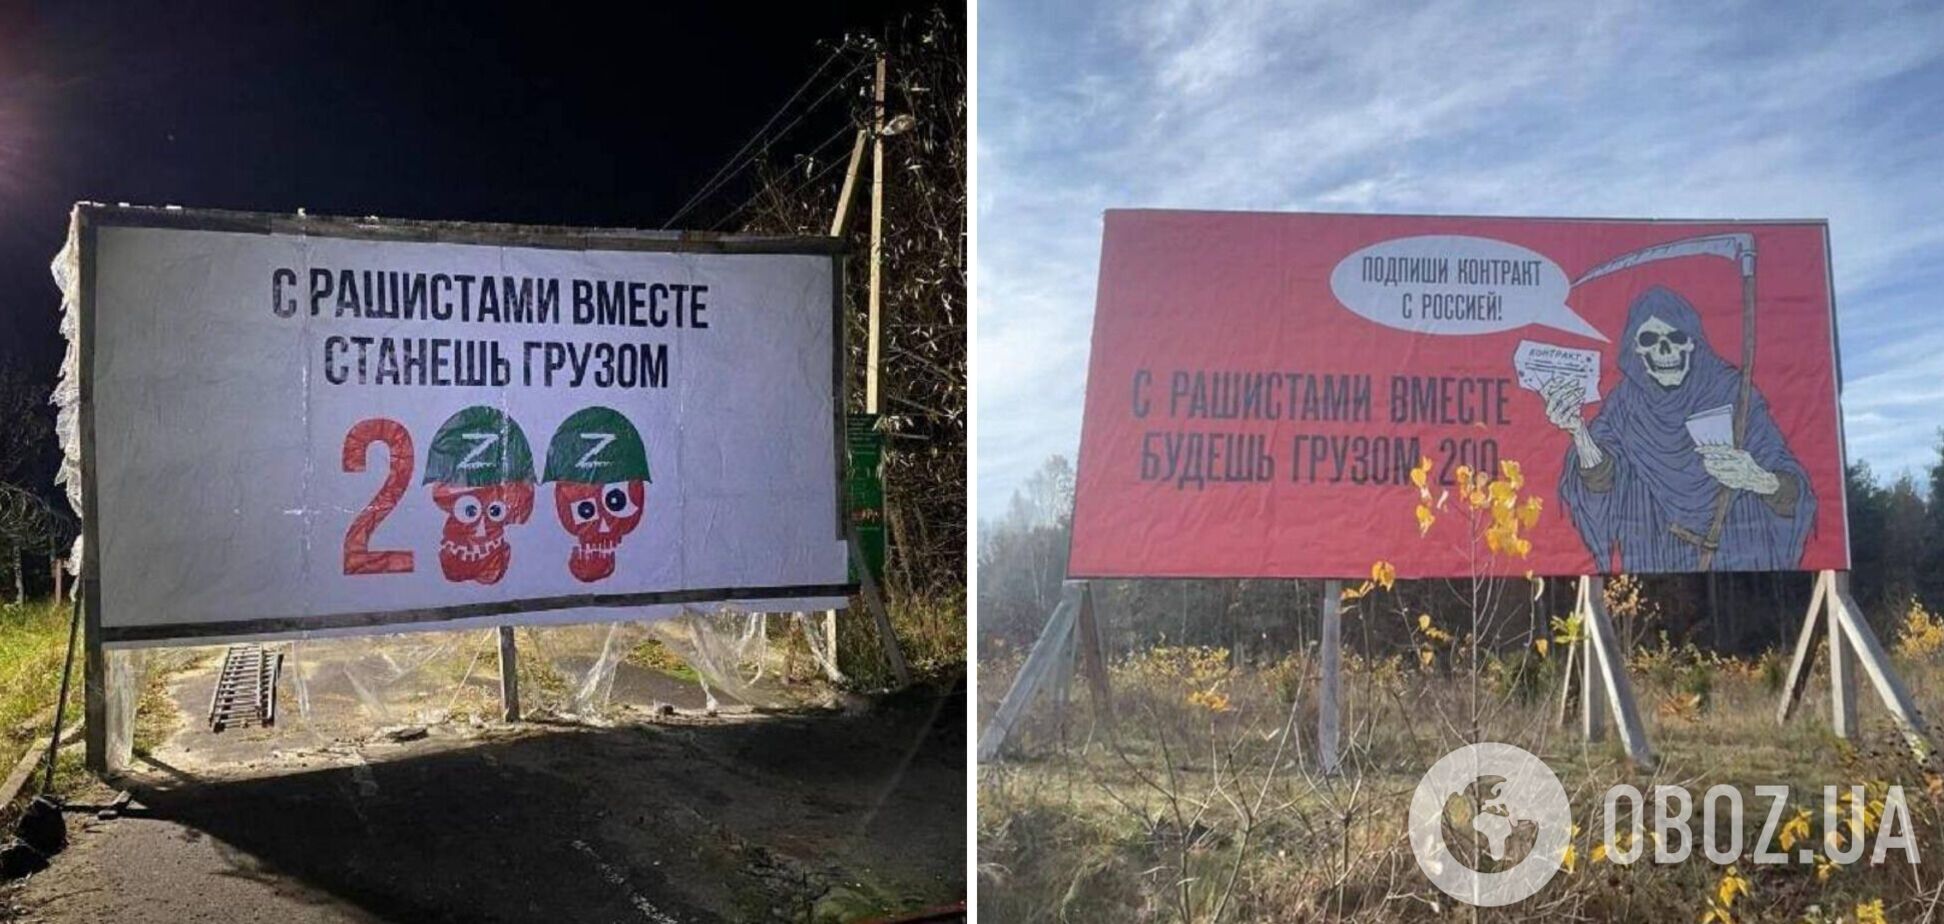 'Станешь грузом 200': на границе с Беларусью появились красноречивые баннеры. Фото